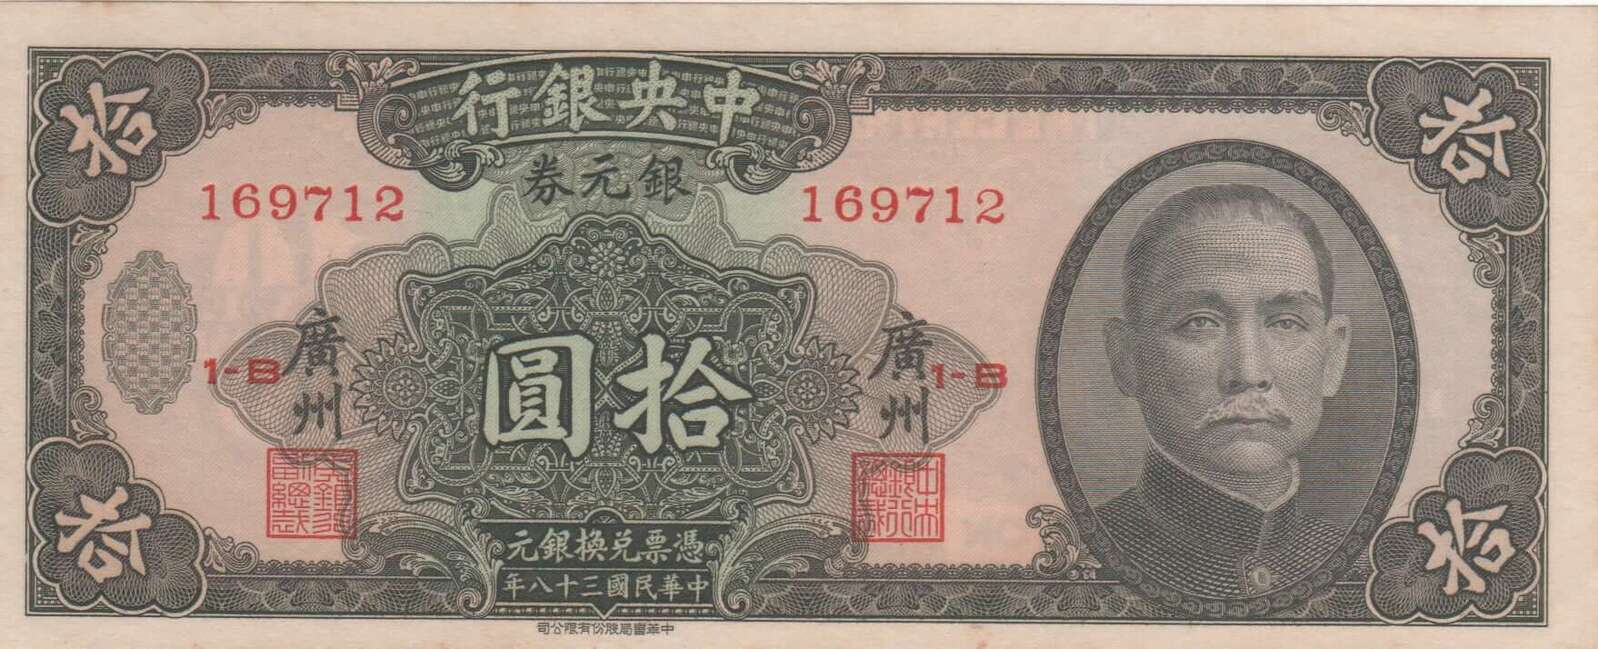 China (Central Bank of China) 1949 10 Silver Dollars P# 447b Uncirculated product image